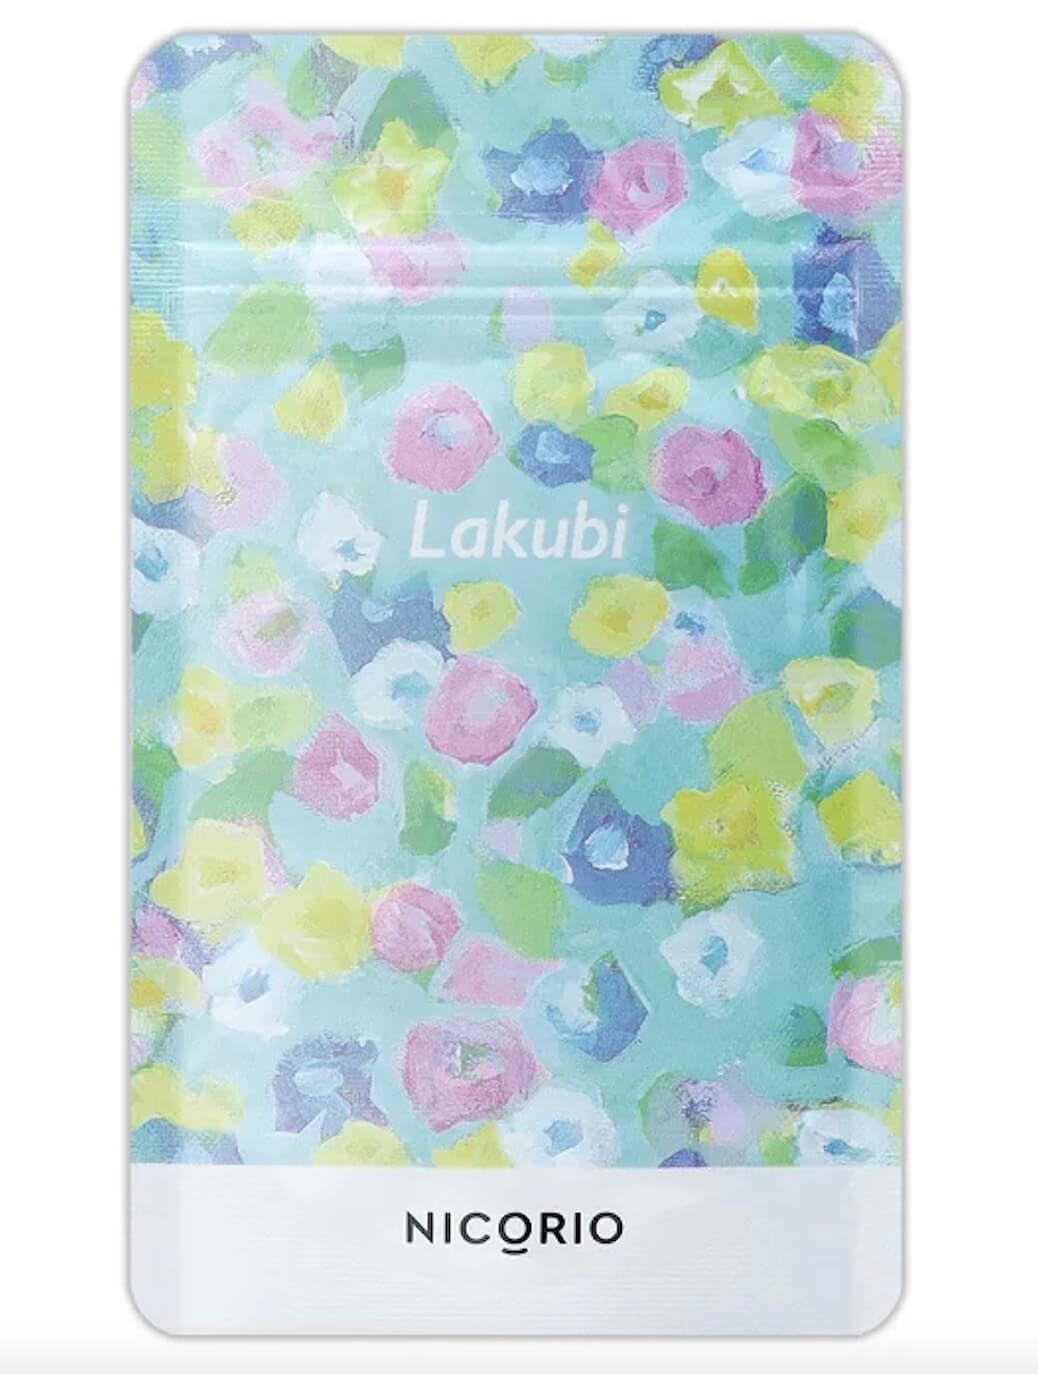 Lakubi（ラクビ）商品画像